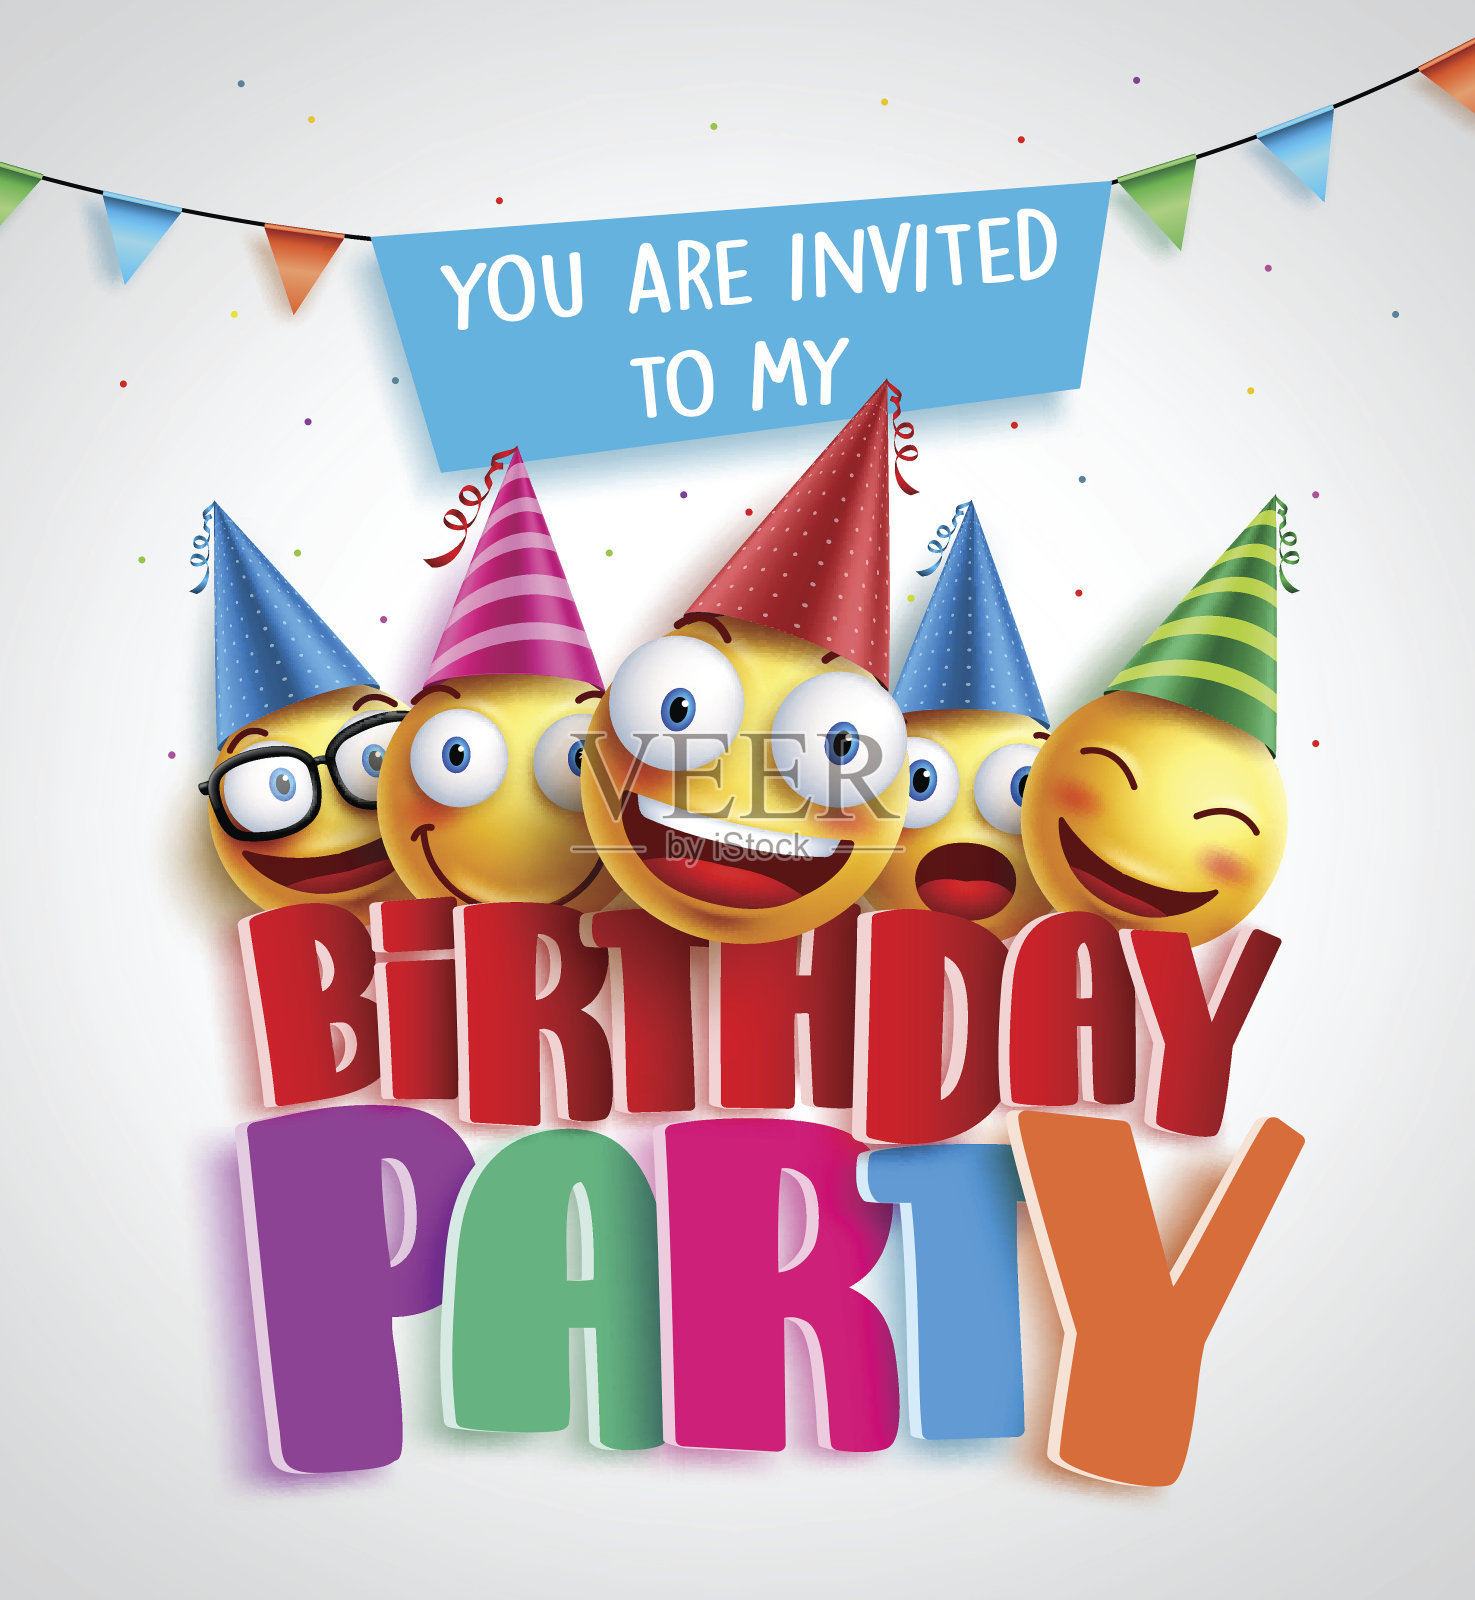 生日派对邀请矢量设计与快乐的笑脸佩戴设计模板素材